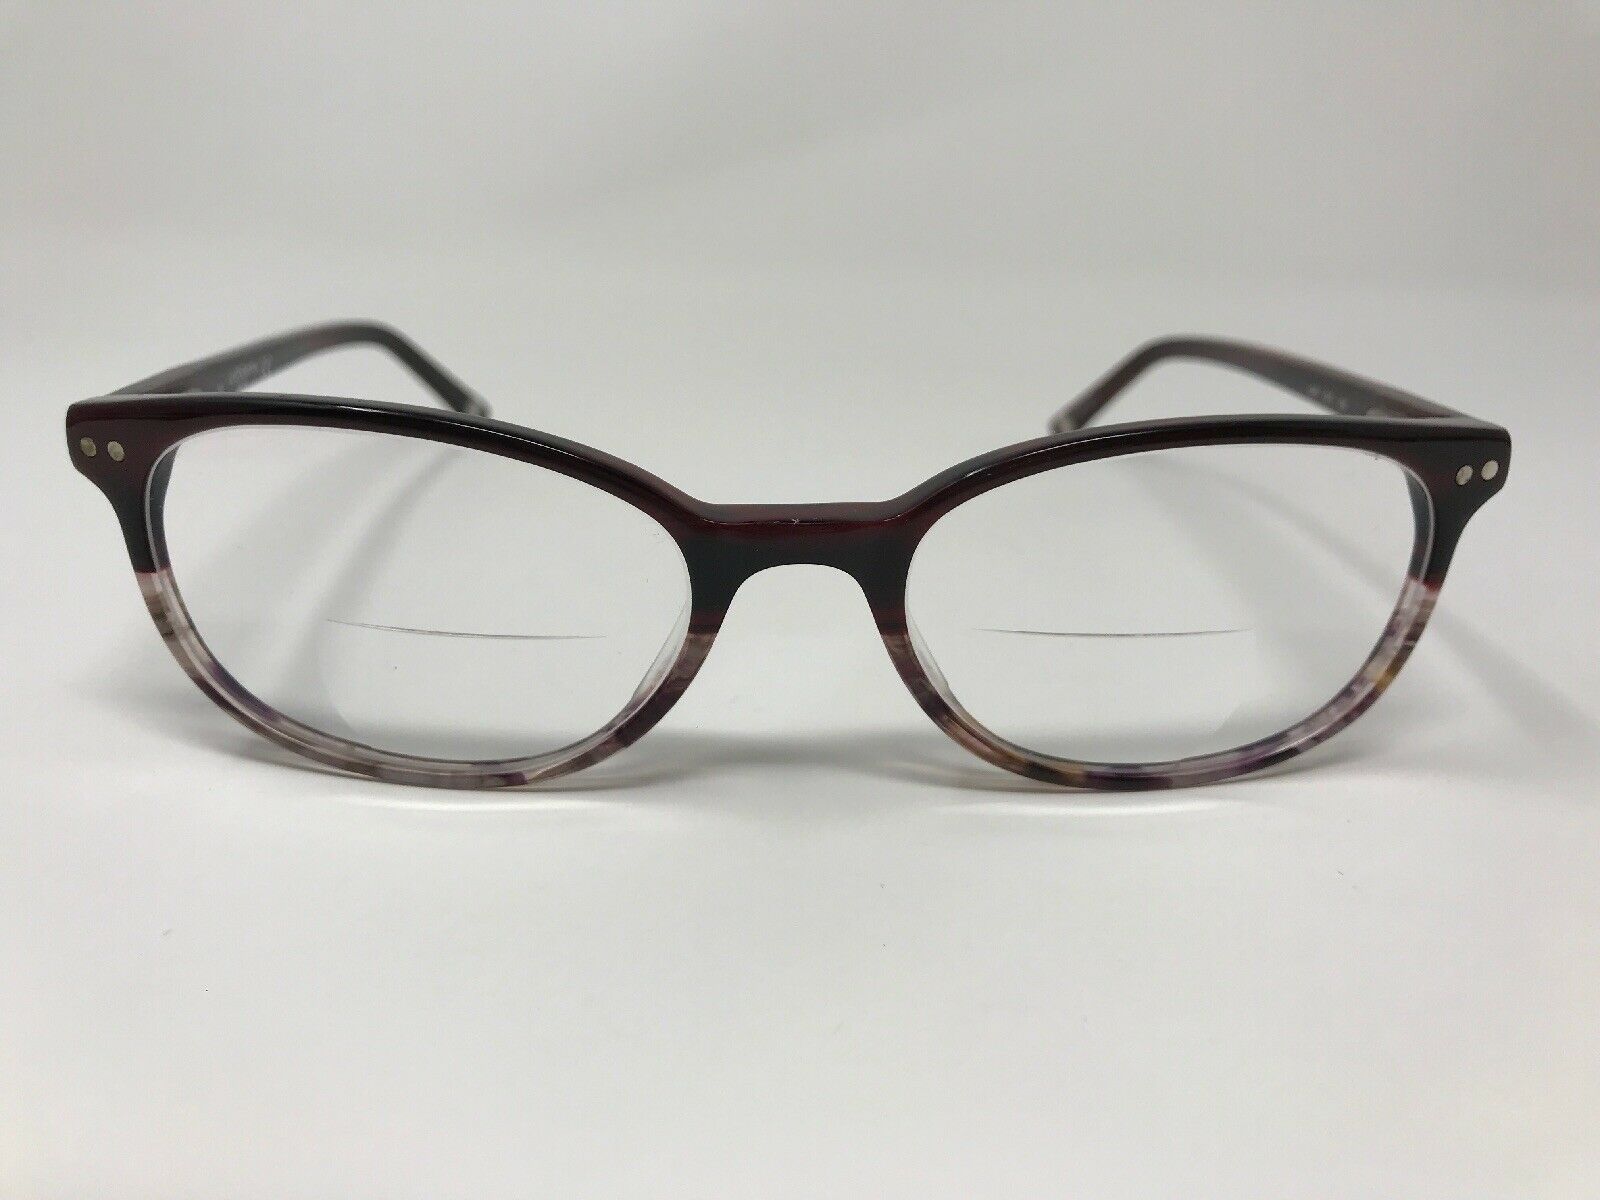 LIZ CLAIBORNE Eyeglasses Frame L380 51-16-135 Polished Burgundy/Clear ...